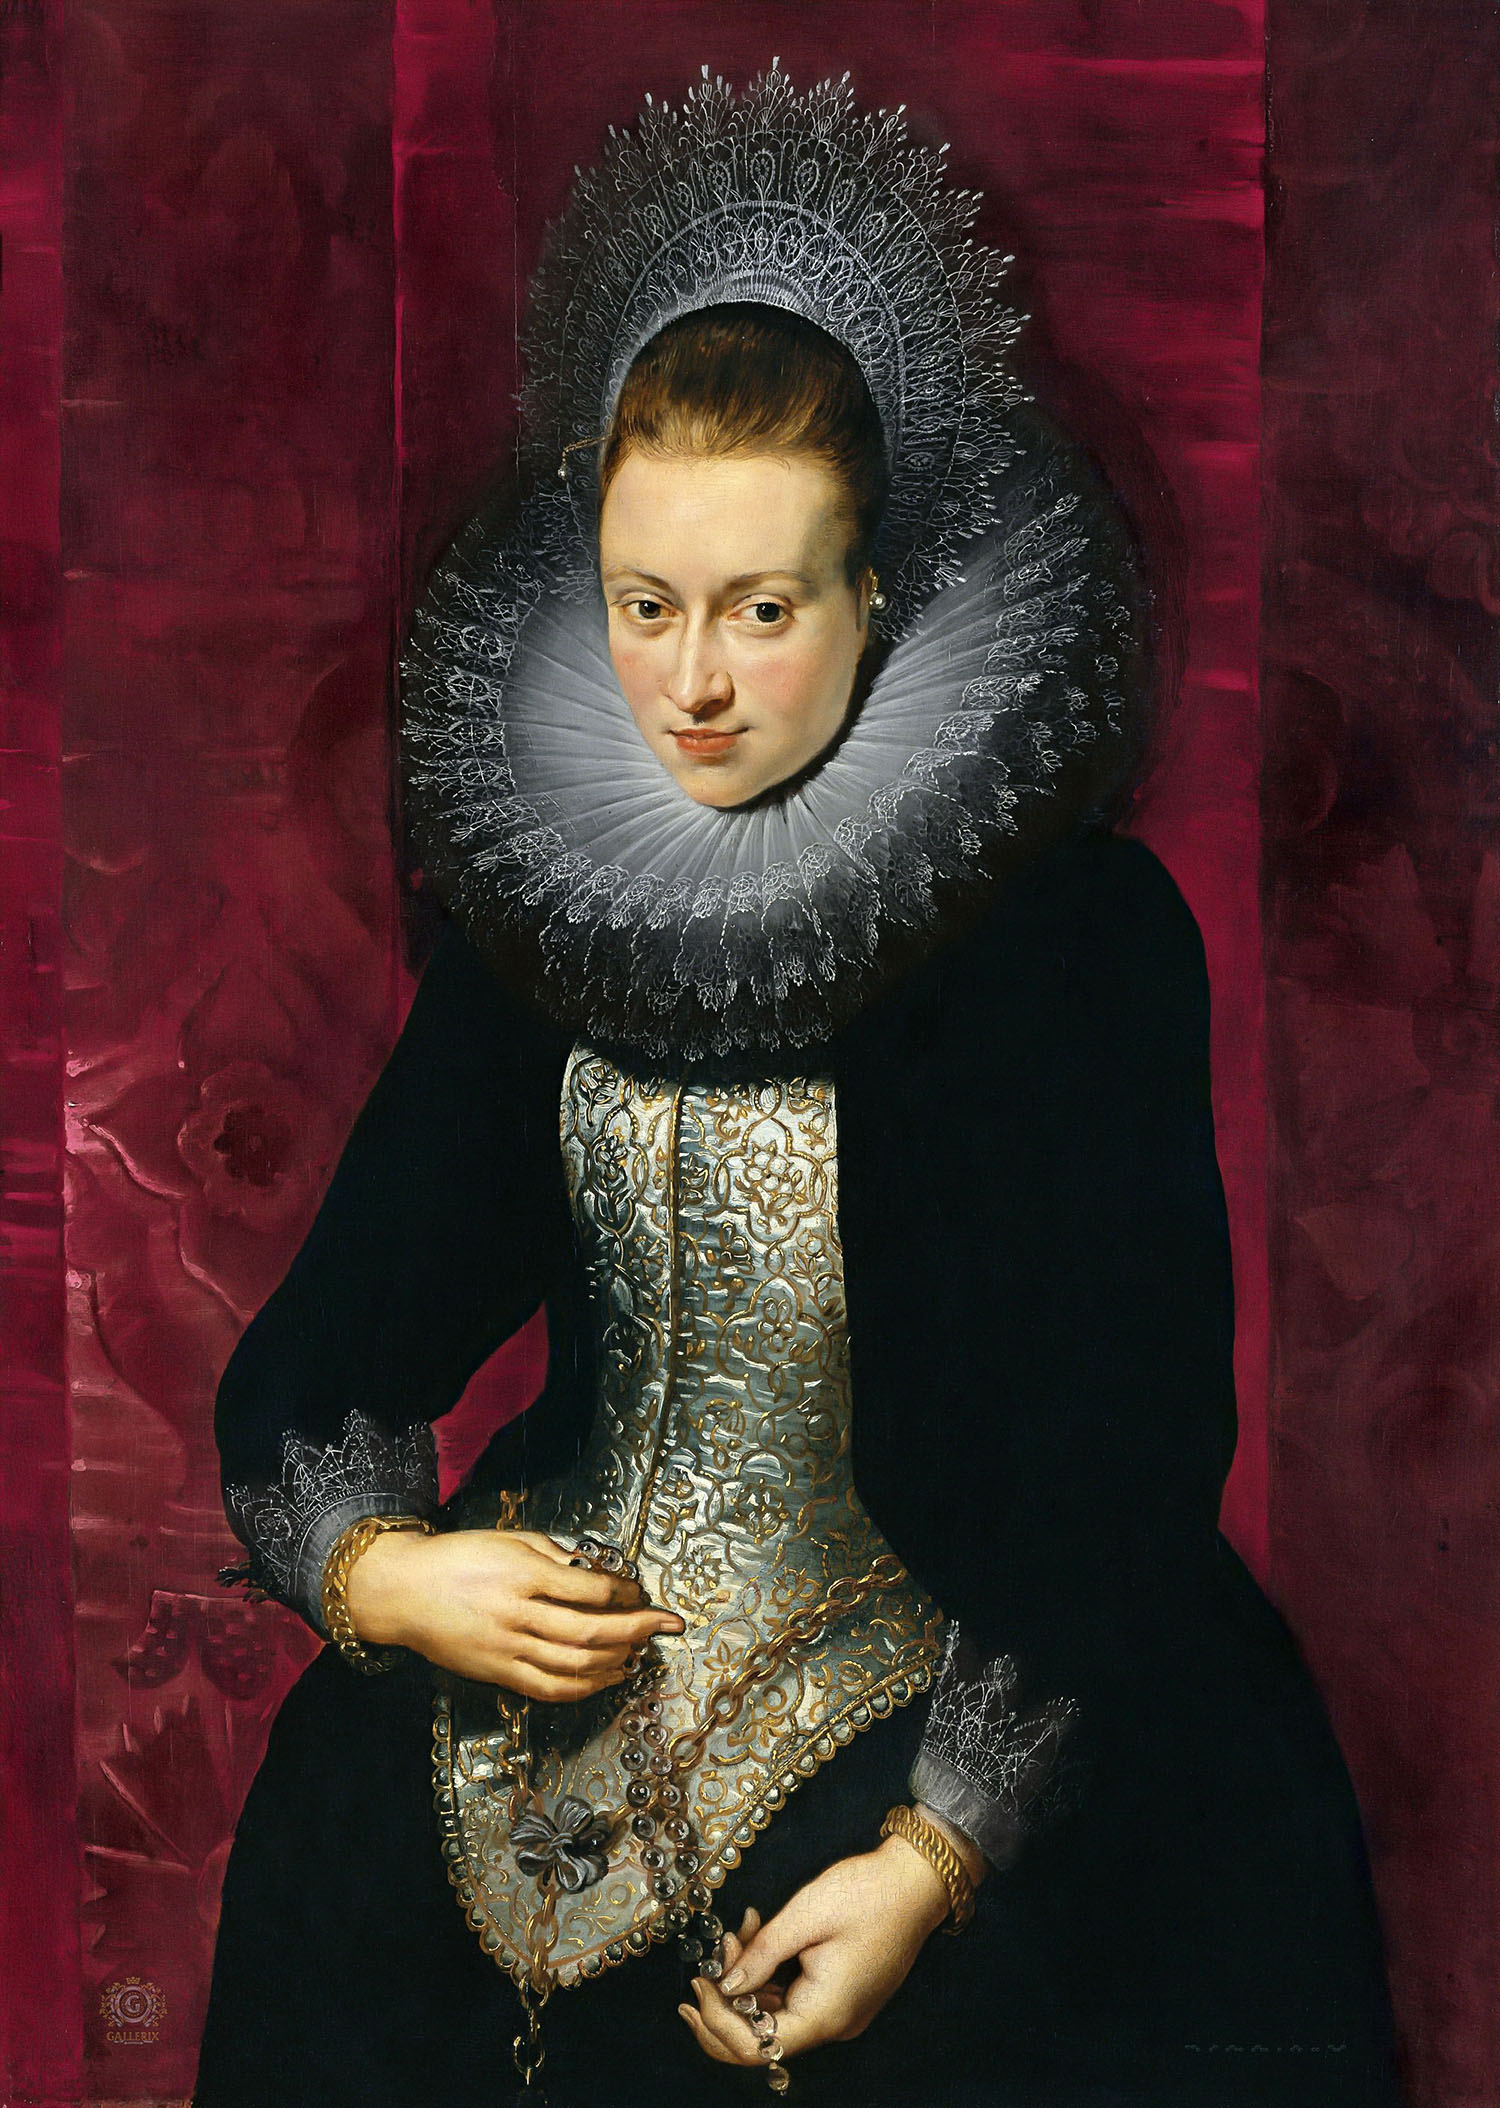 Питер Пауль Рубенс. "Портрет женщины с чётками". Около 1609-1610. Коллекция Тиссен-Борнемиса, Мадрид.